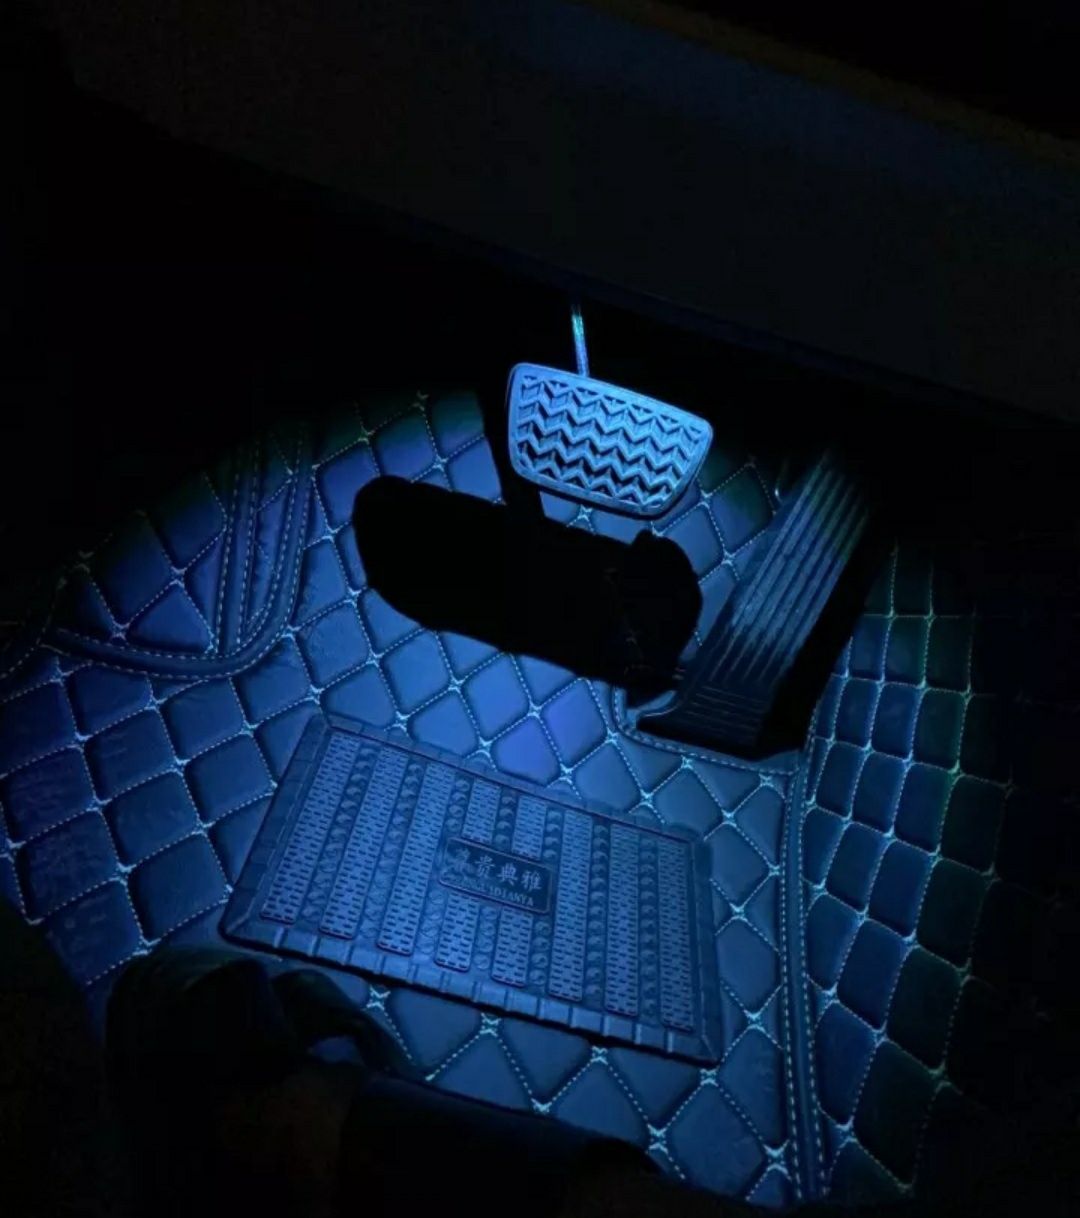 Подсветка на панель Toyota Camry 70